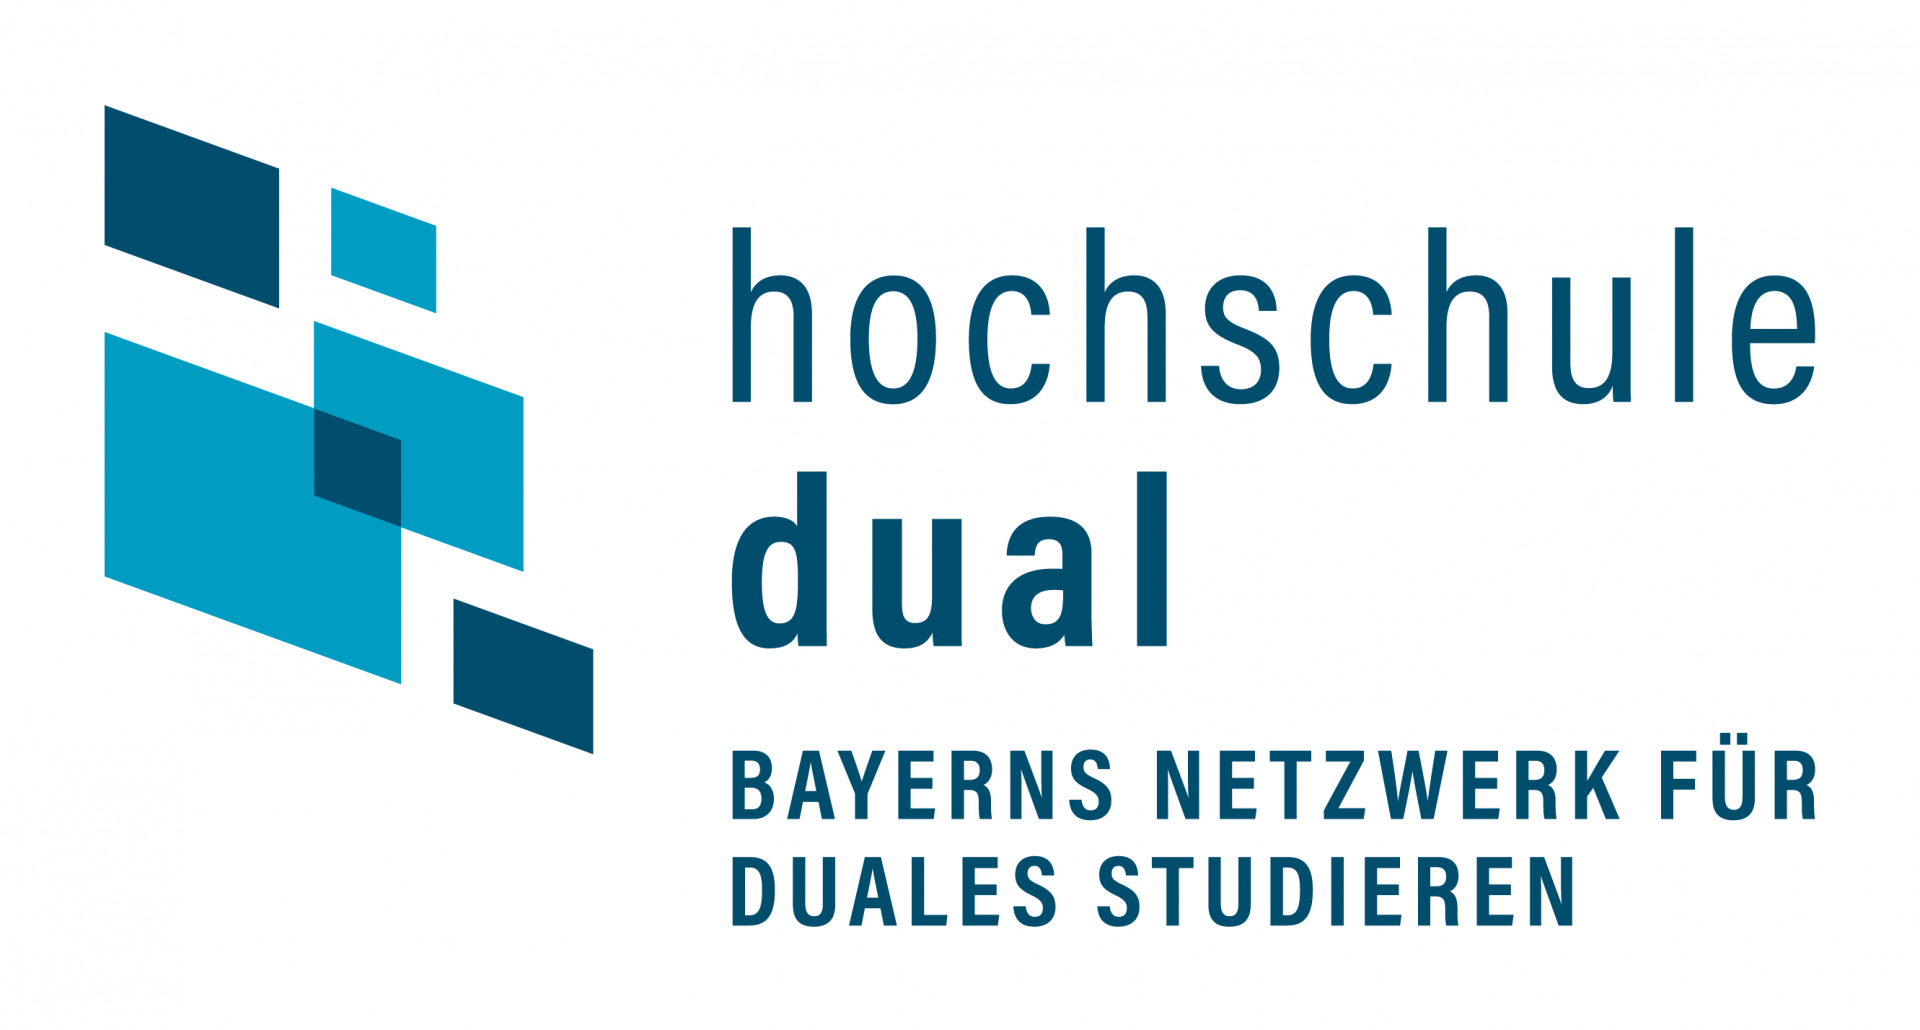 Hochschule Dual. Bayerns Netzwerk für duales Studieren.